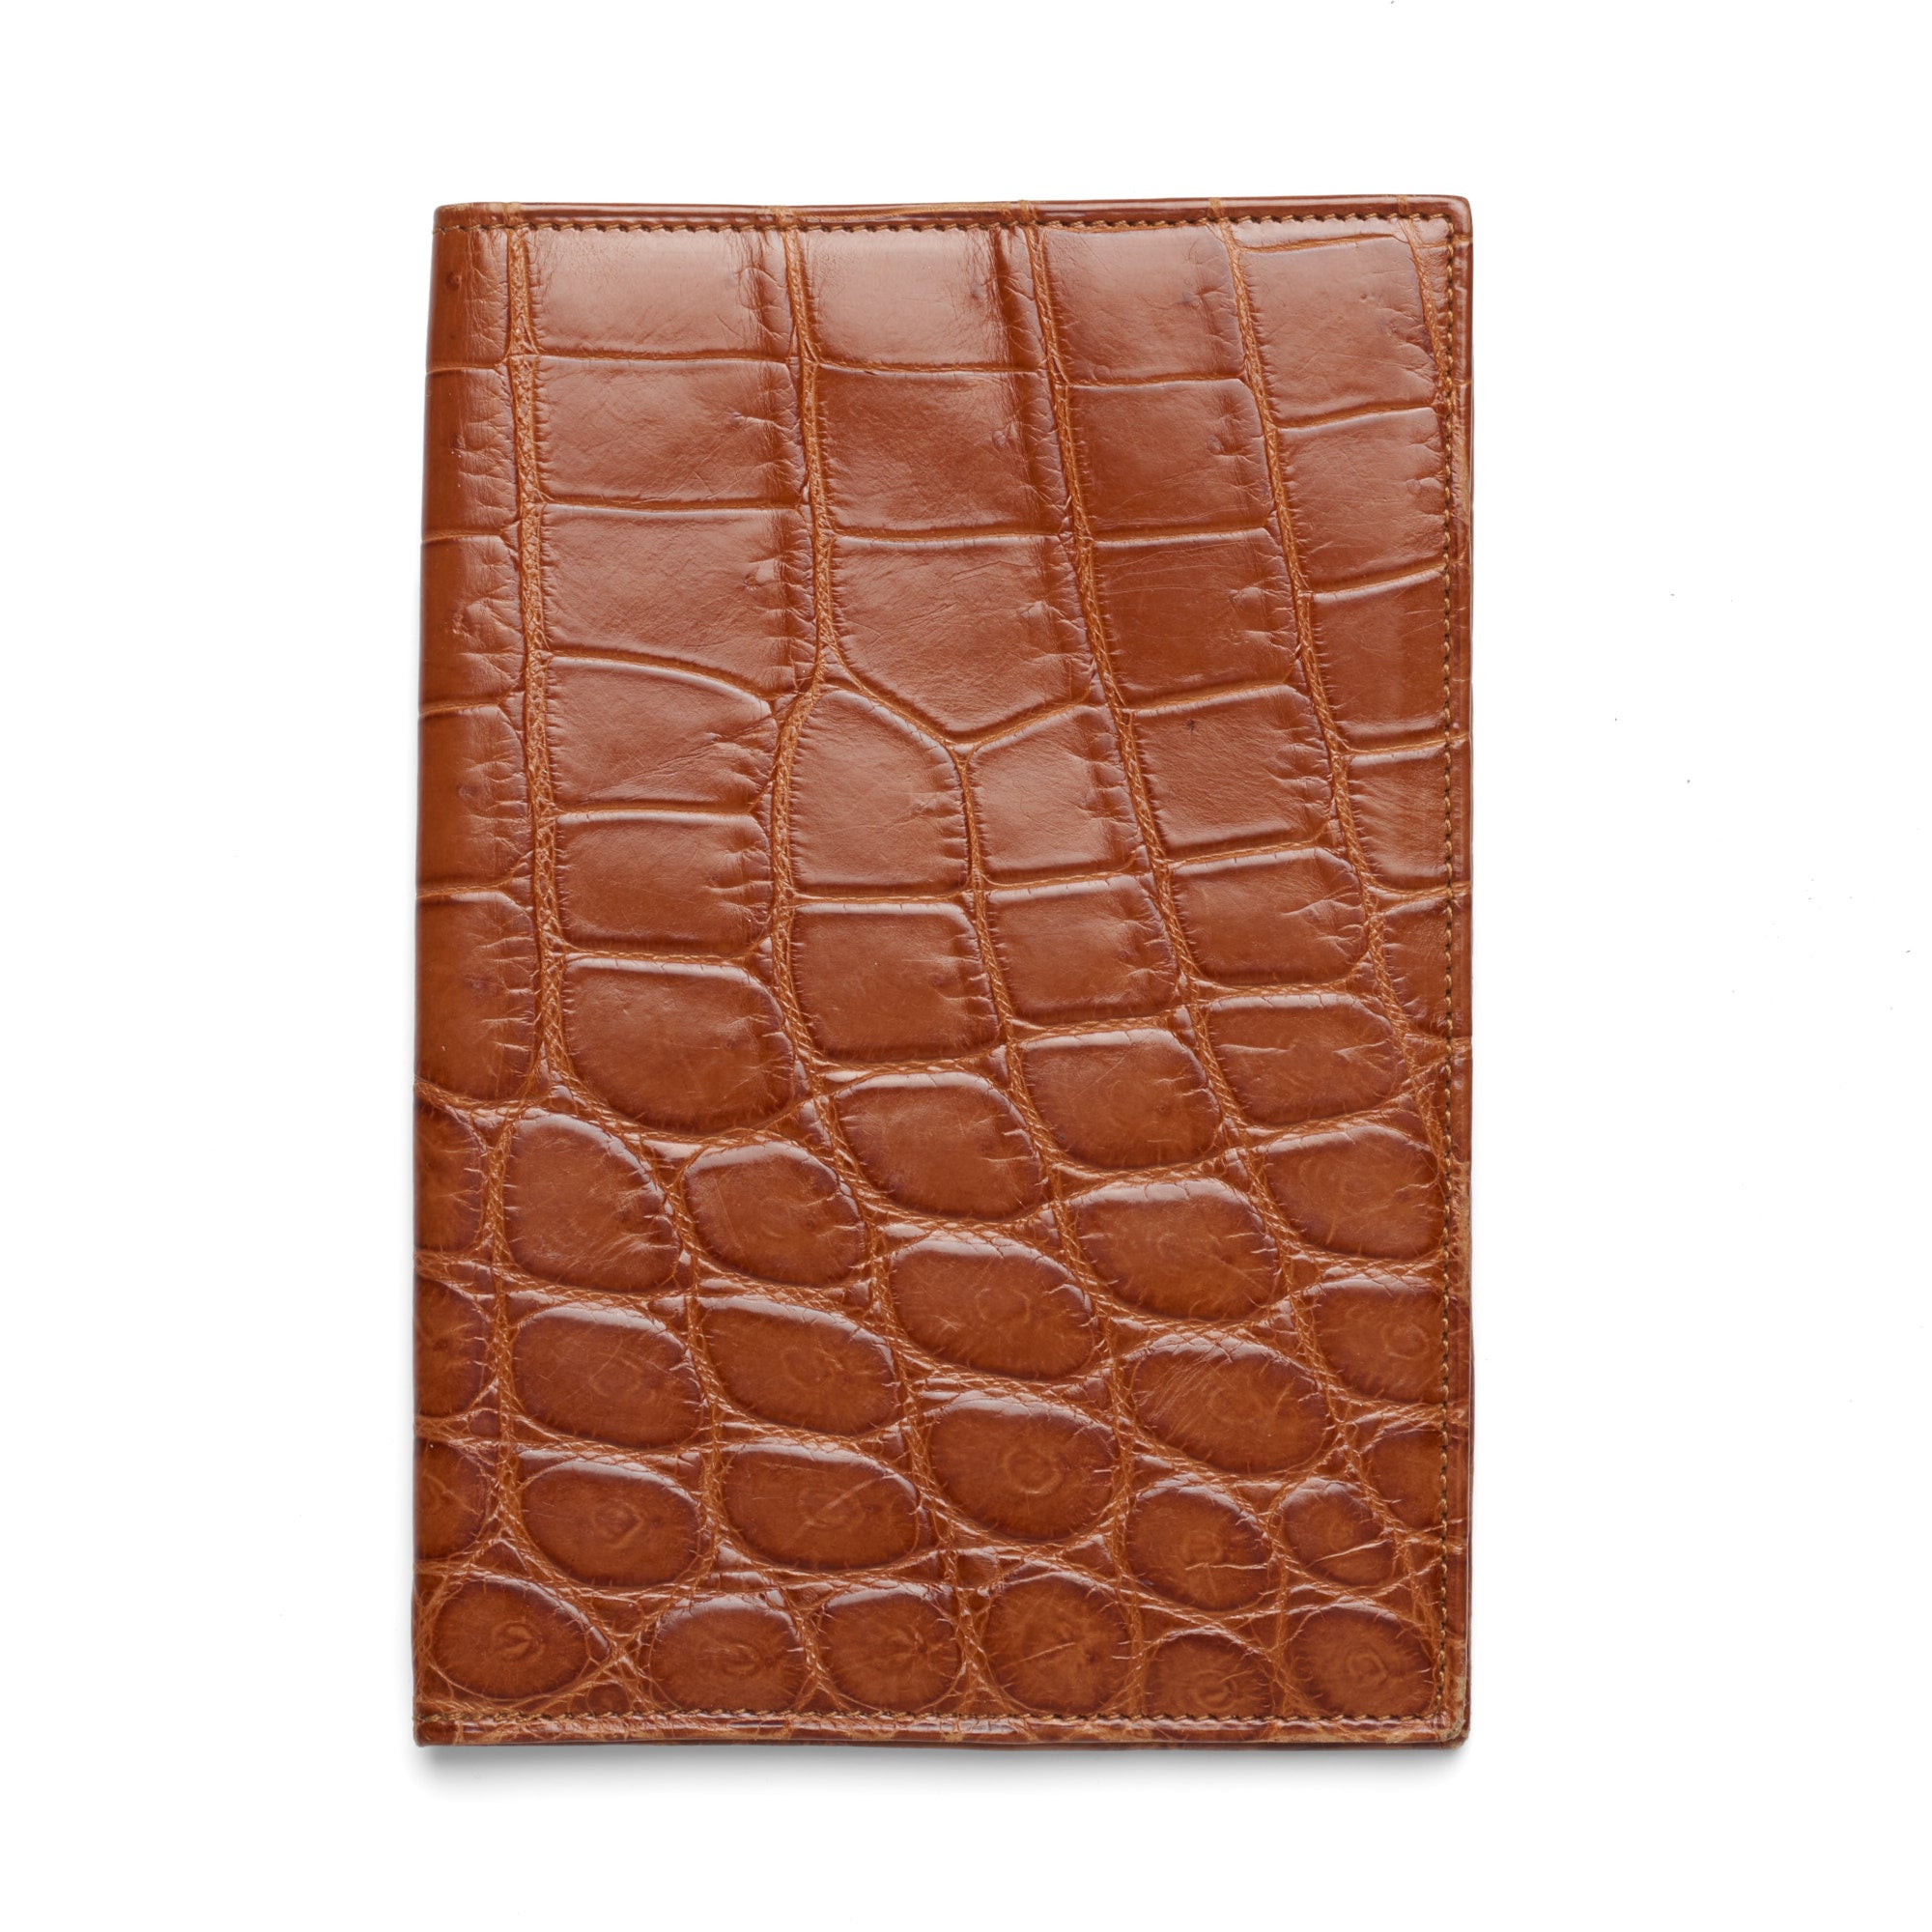 Via La Moda Brown Crocodile Leather Passport Holder Cover VIA LA MODA